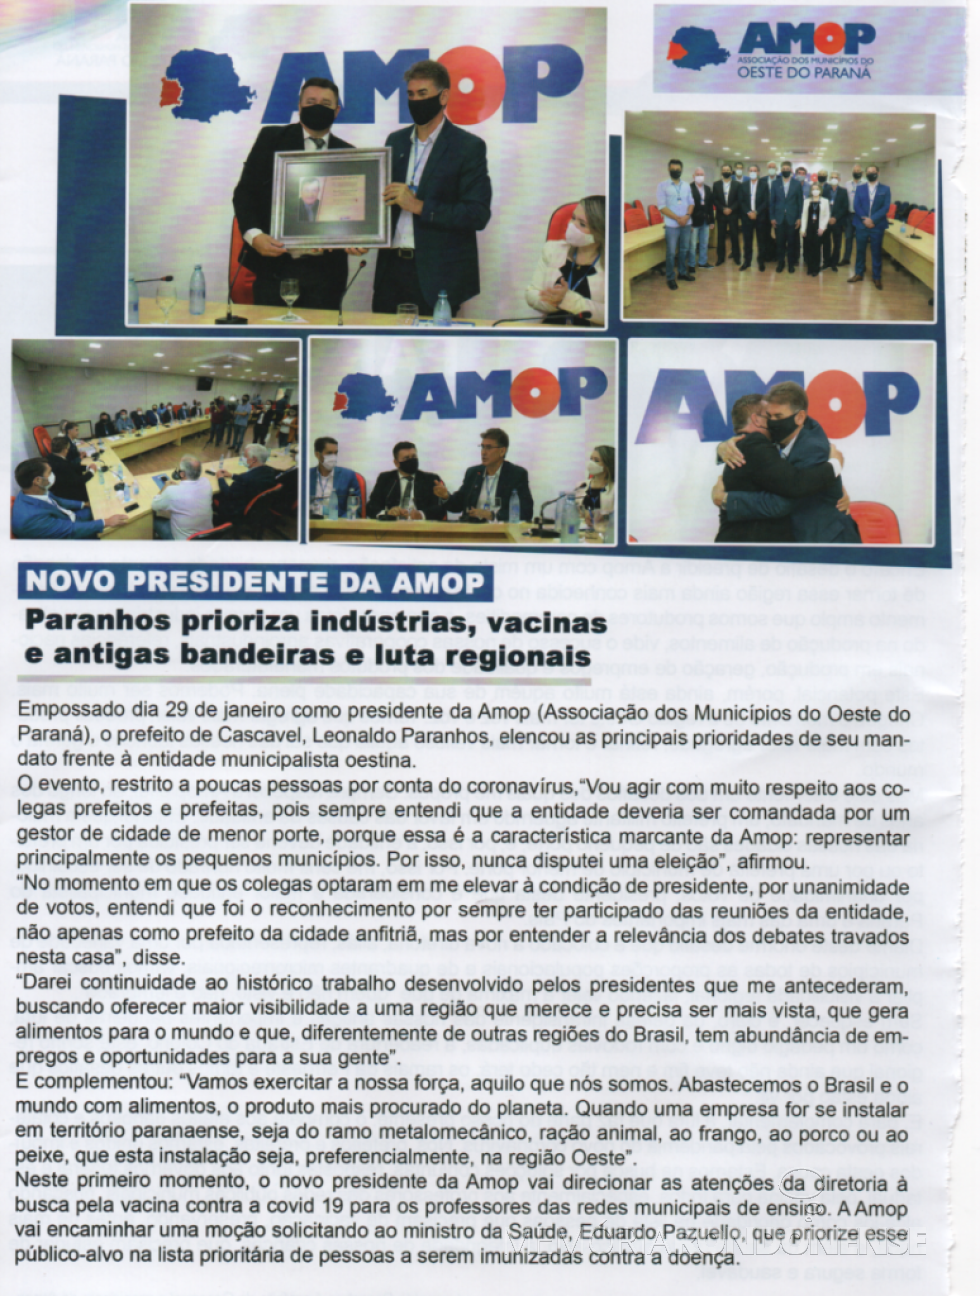 Destaque da Revista AMOP sobre a posse de Leonaldo Paranhos como presidente da entidade.
Imagem: Acervo AMOP (revista) - FOTO 11 - 